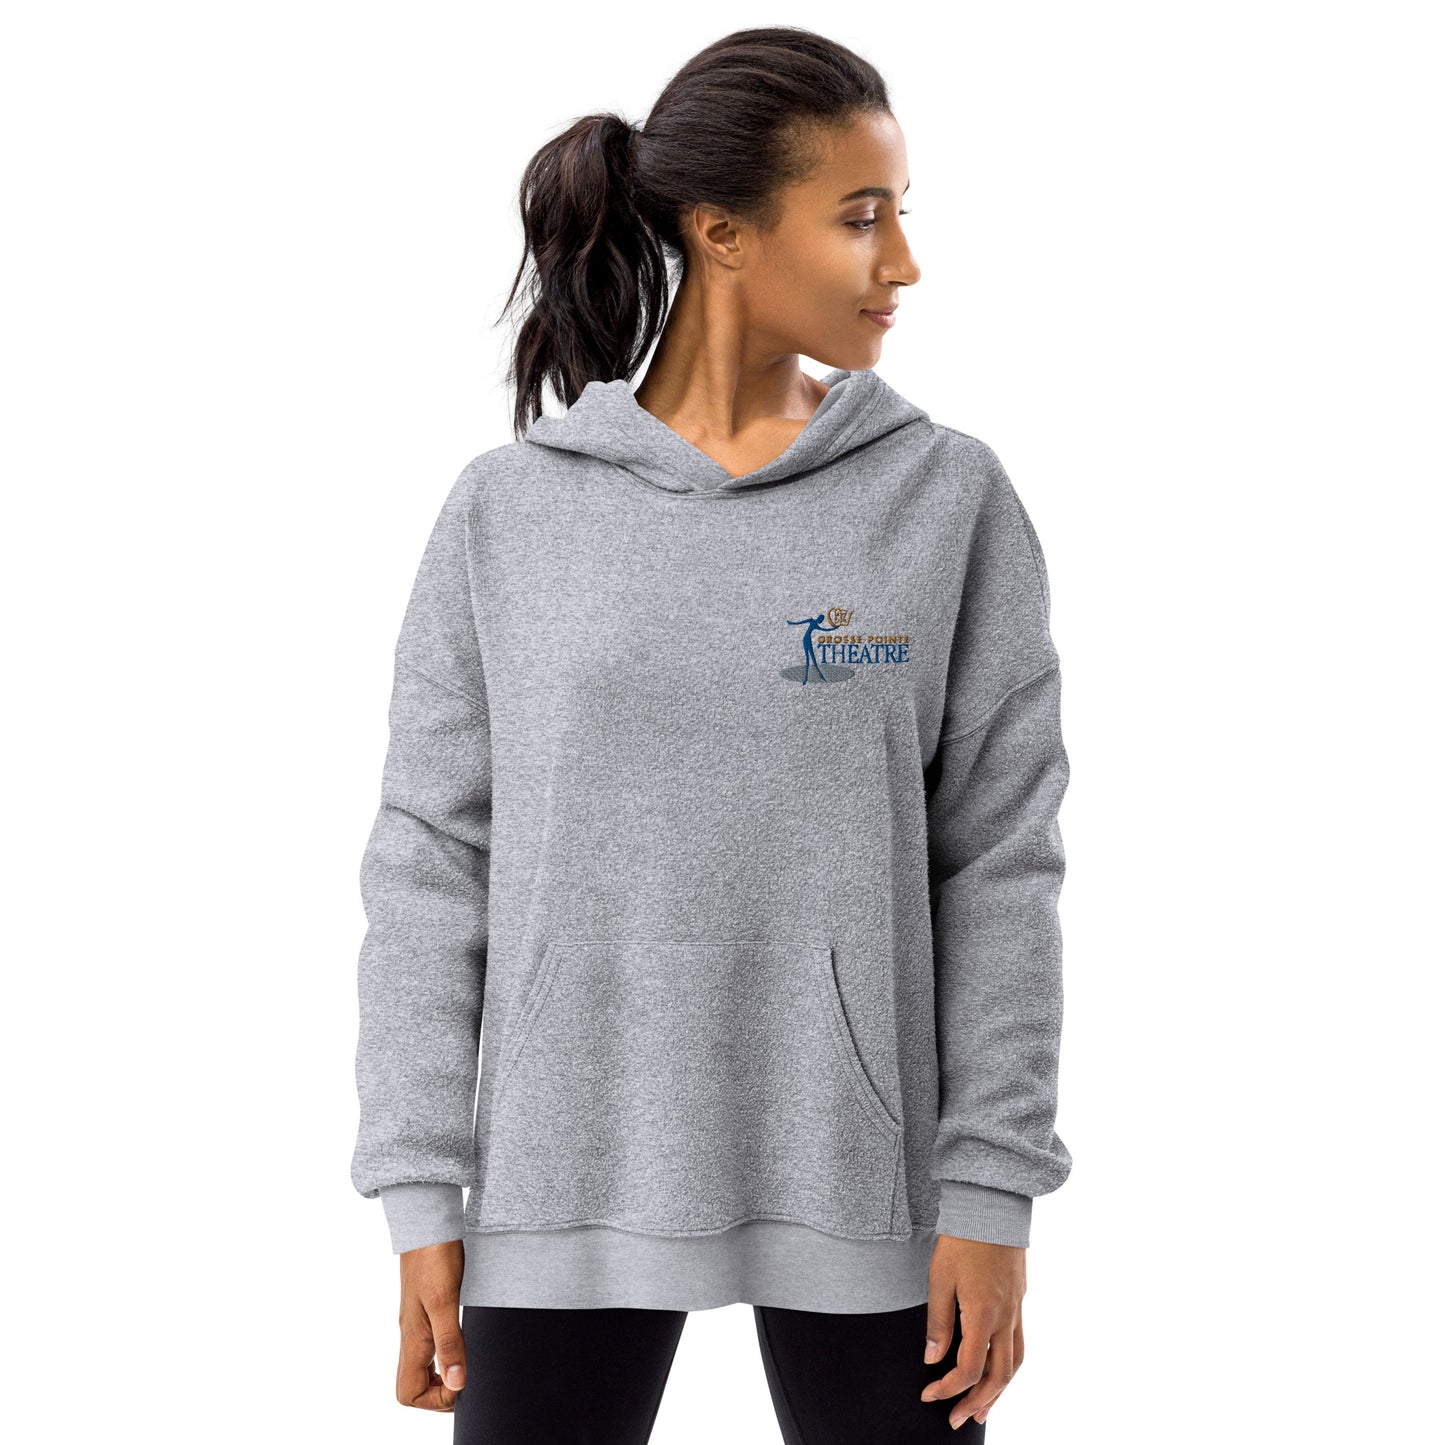 GPT Logo Unisex sueded fleece hoodie